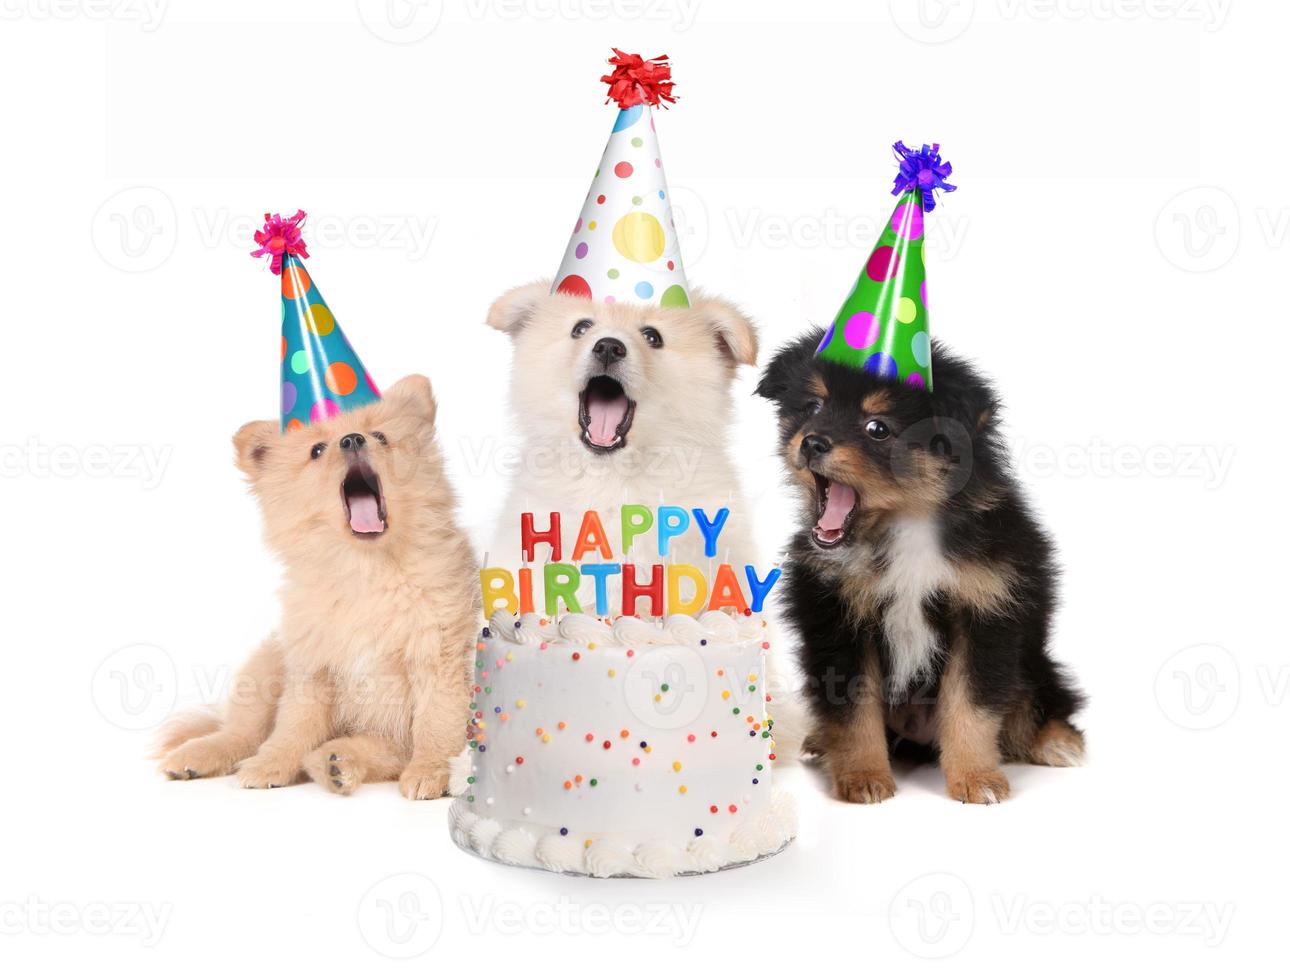 cuccioli che cantano la canzone di buon compleanno con la torta foto